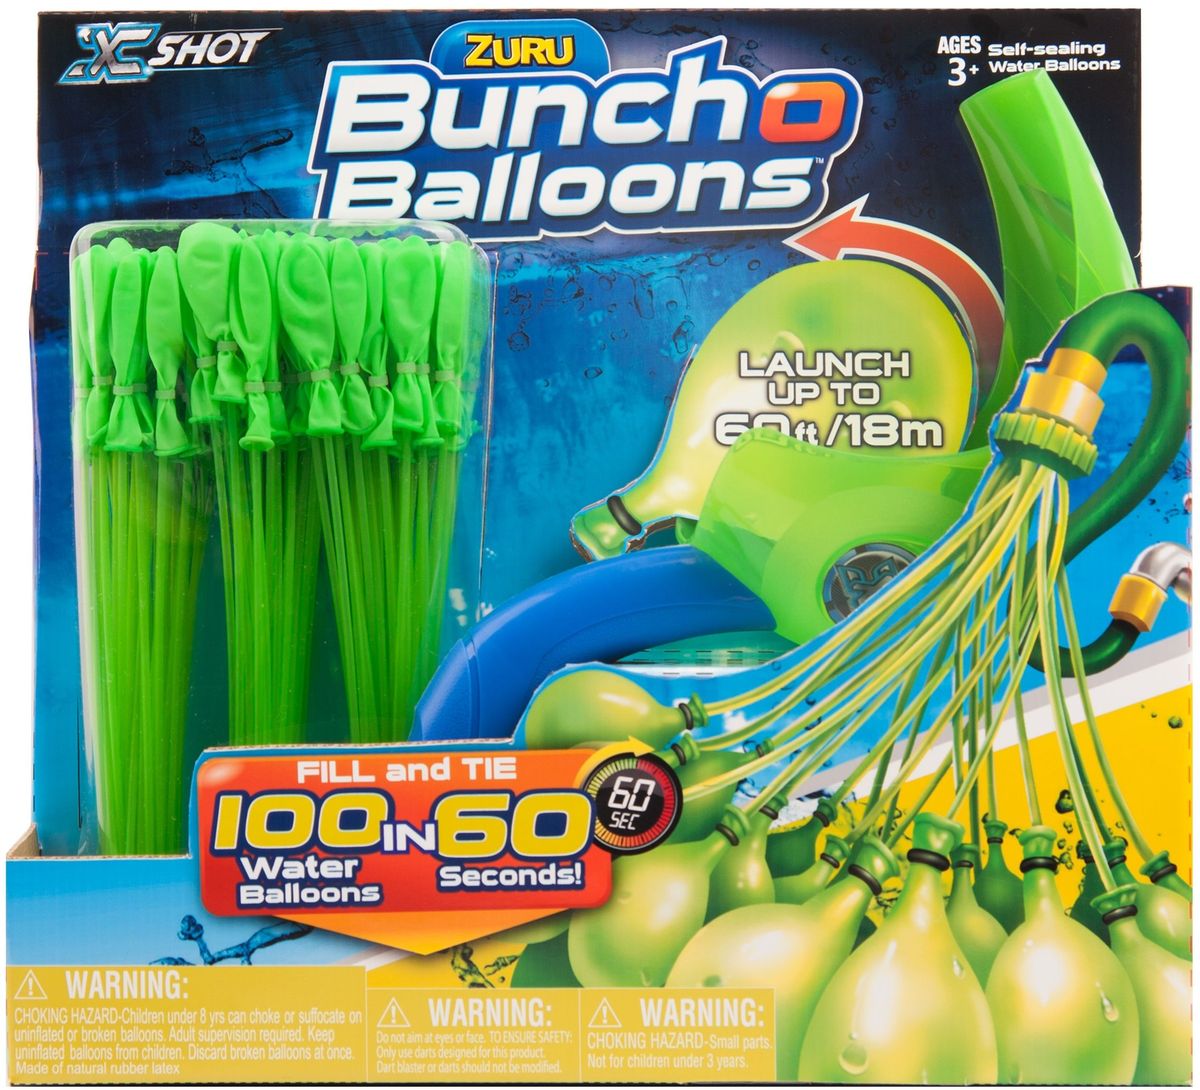 Zuru Водяное оружие Bunch O Balloons с пусковым устройством цвет зеленый